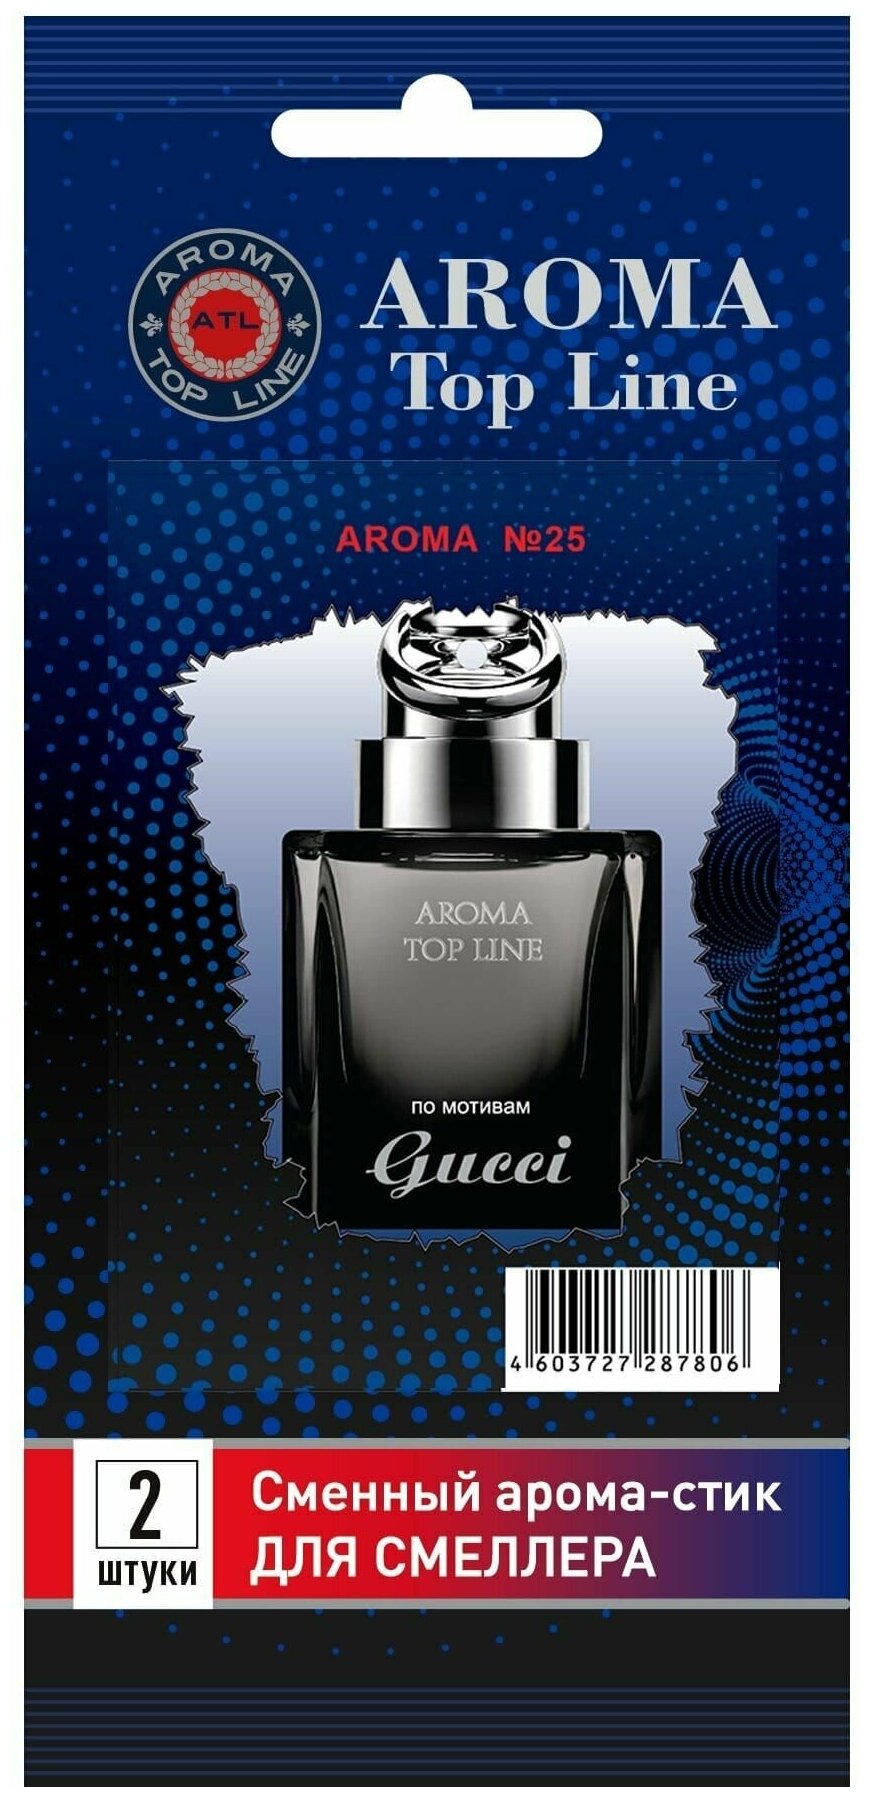 Аромастик Aroma-Topline для смеллера 2 шт. с ароматом мужского парфюма Gucci - by Gucci